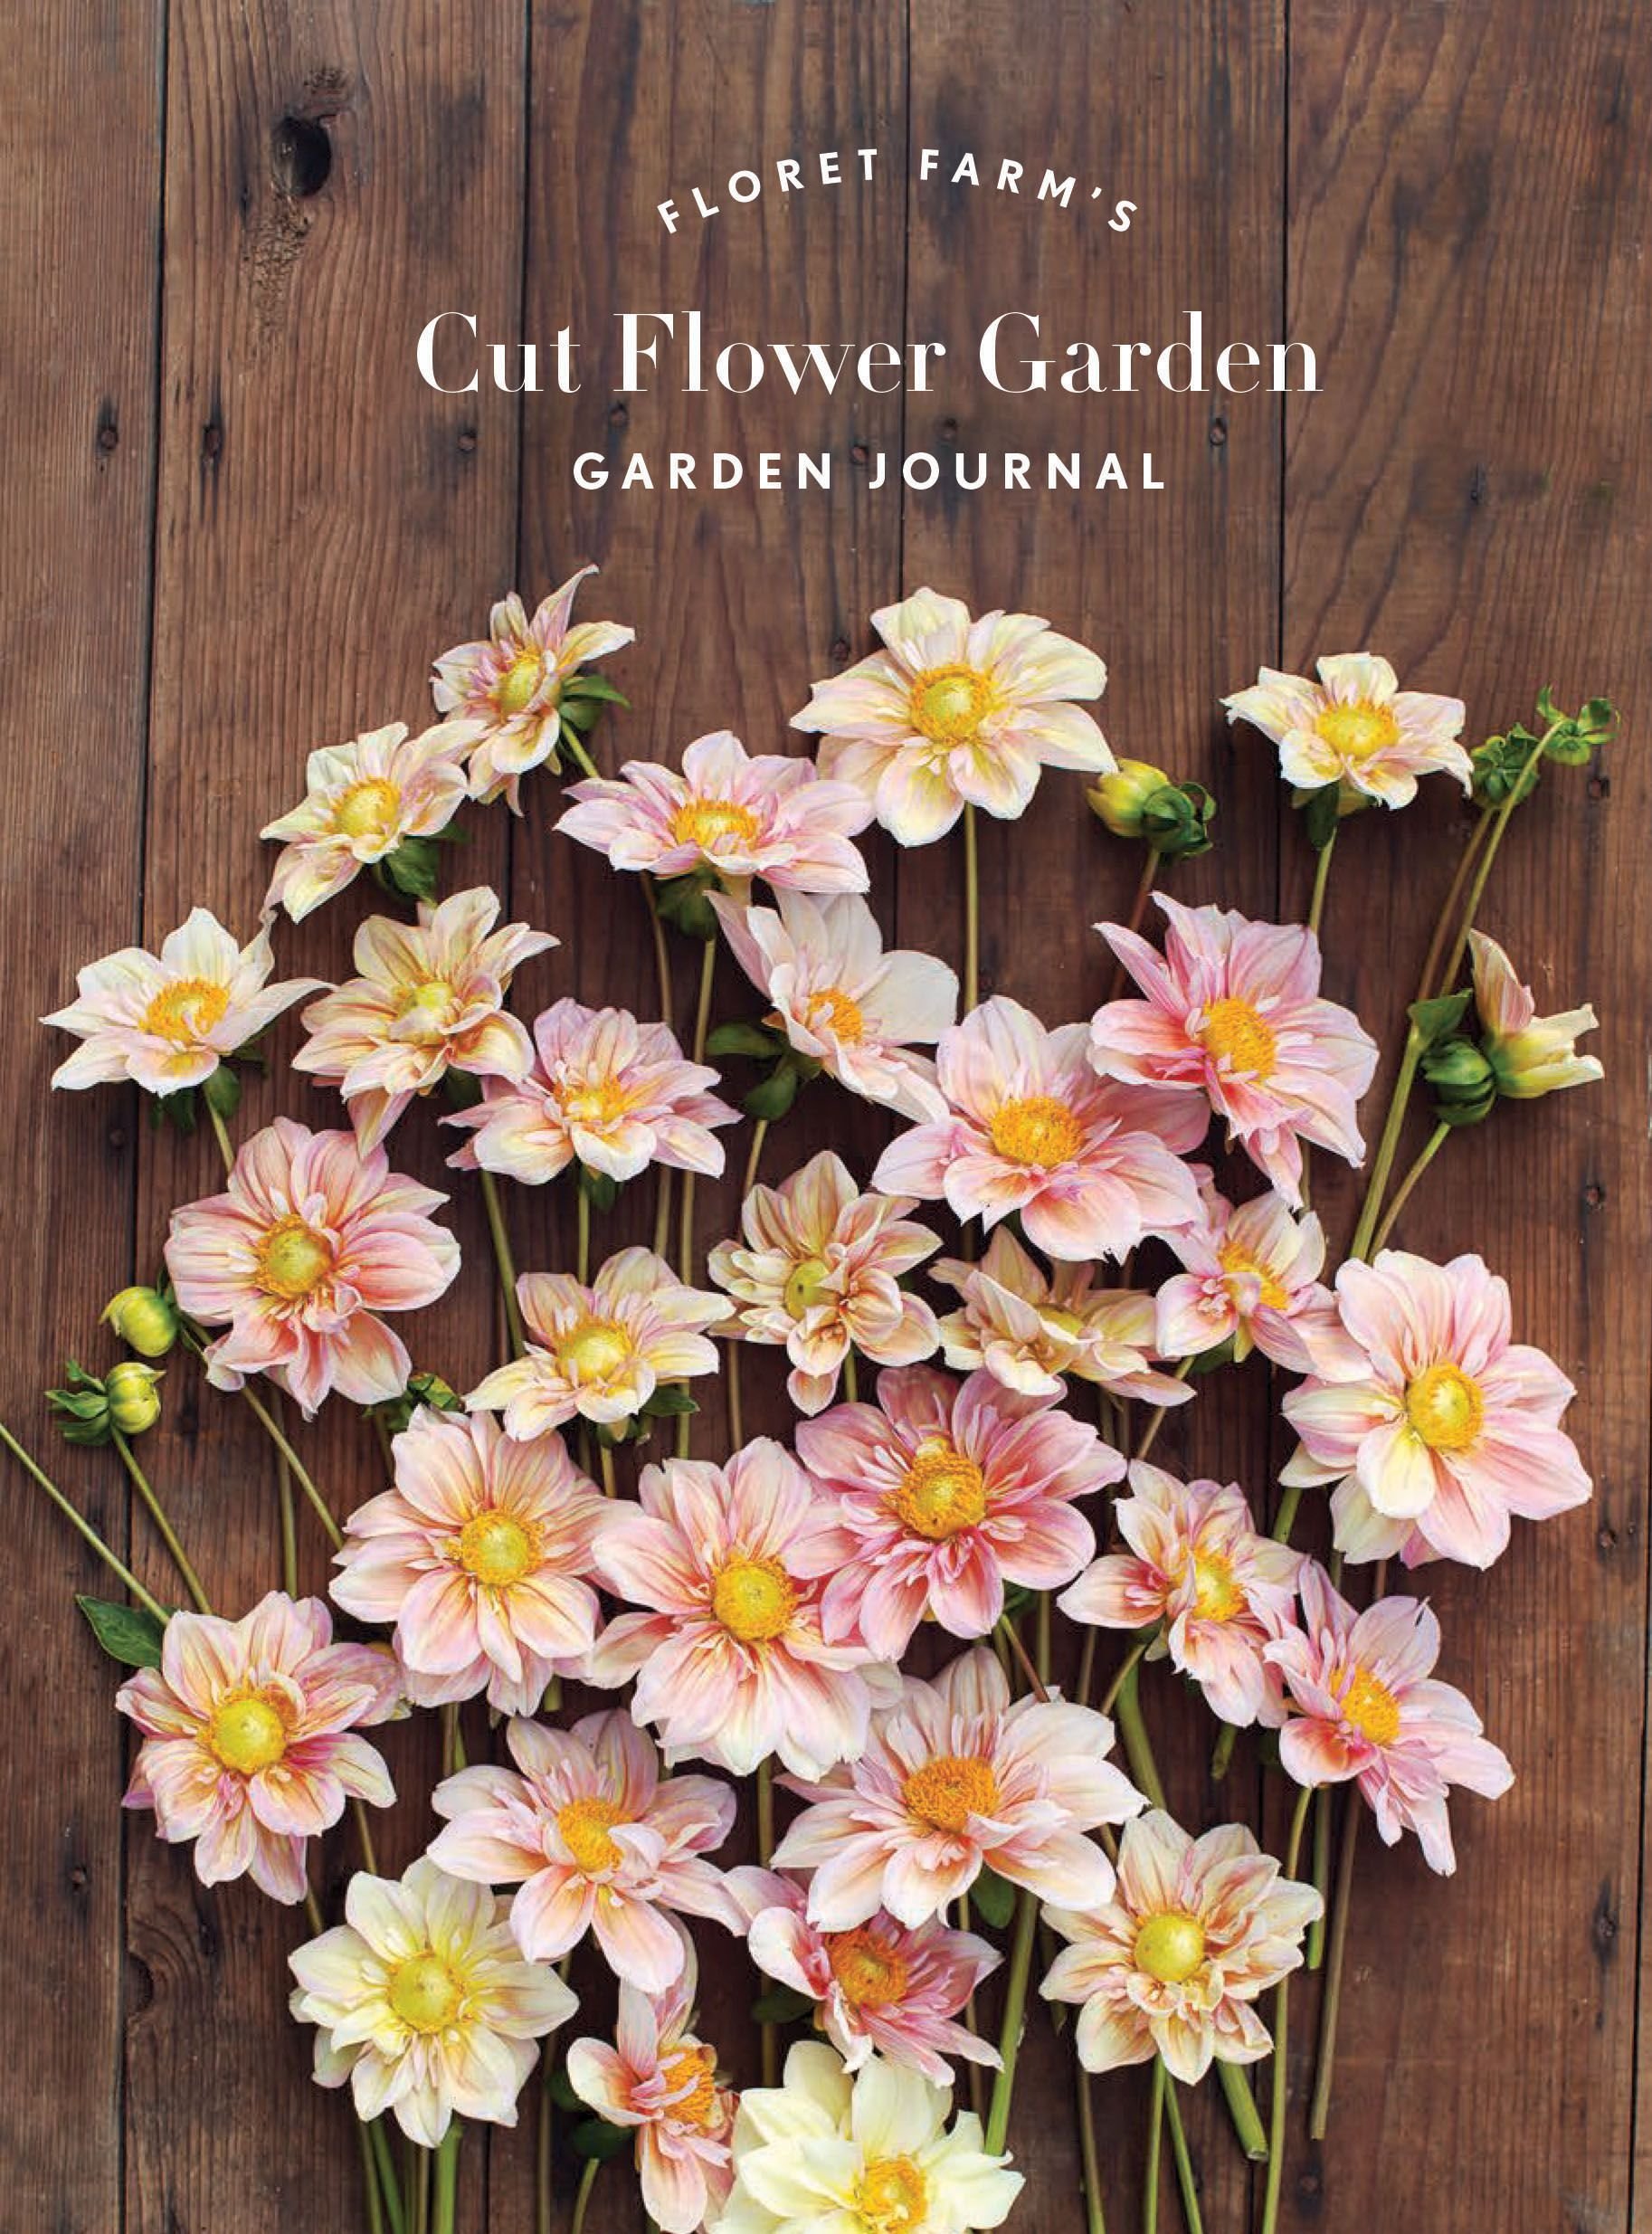 floret farm's cut flower garden garden journal by erin benzakein (notebook  / blank book)